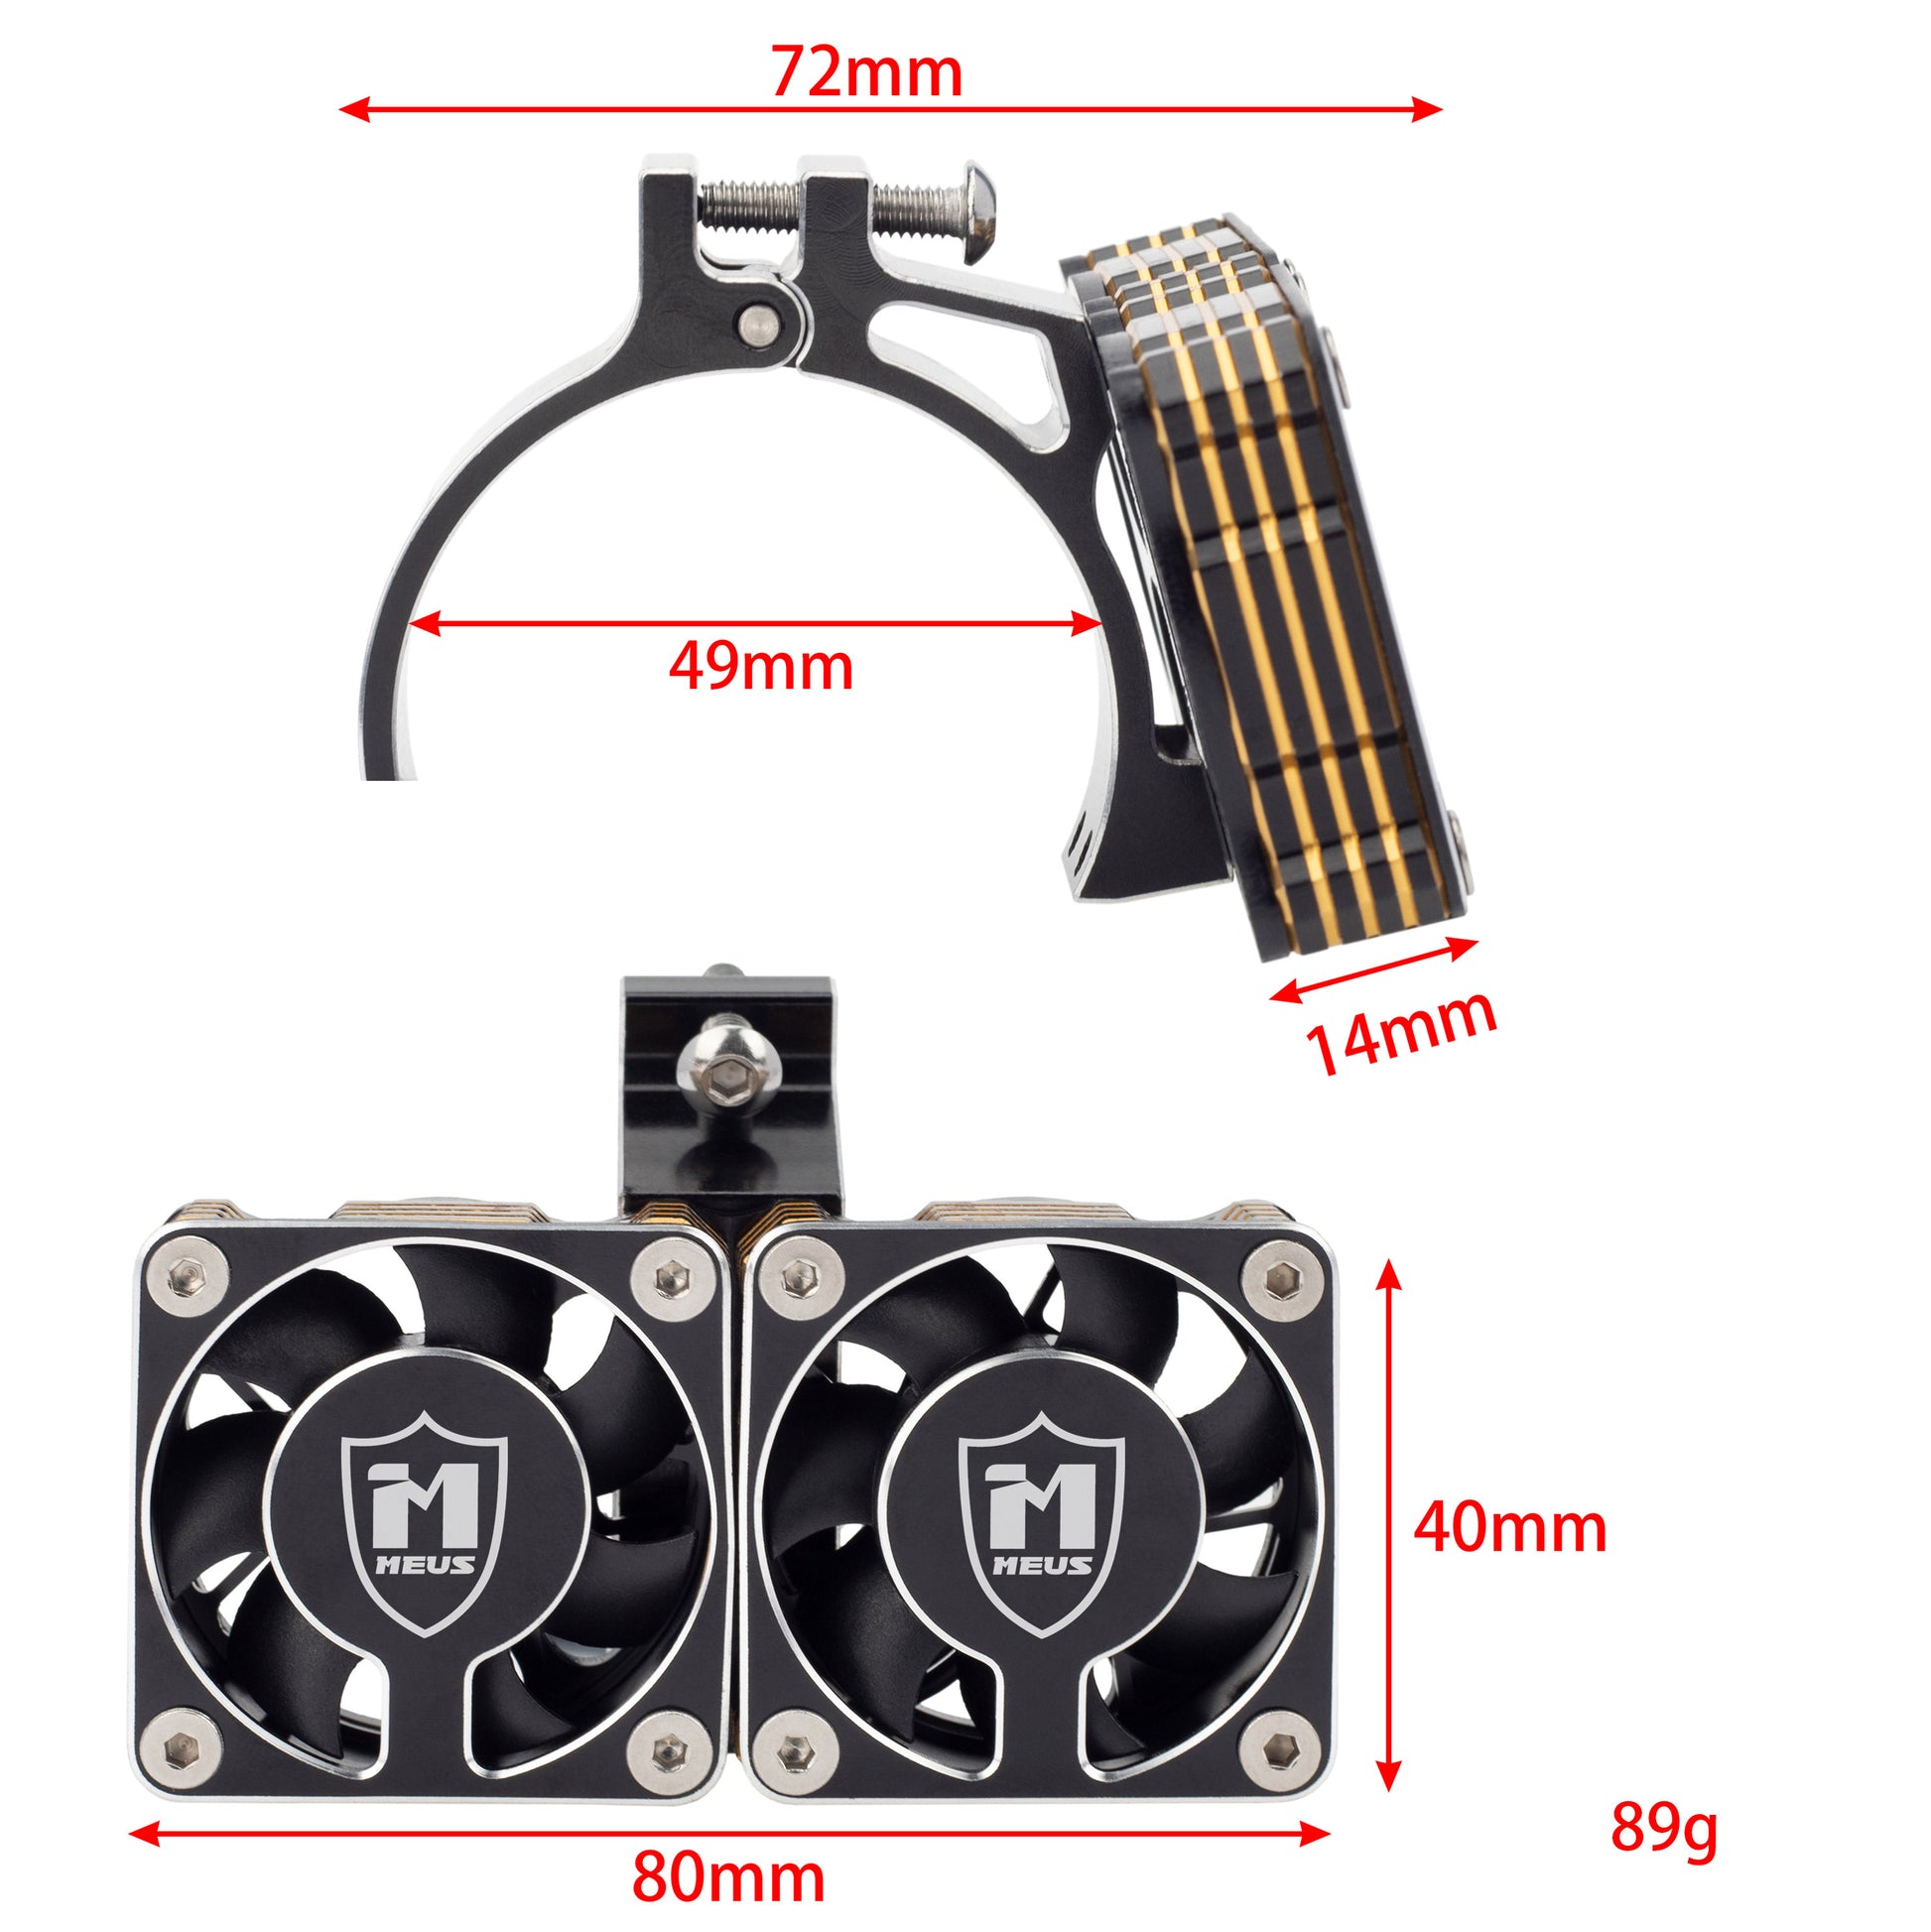  Black RC motor cooling fan heat sink size